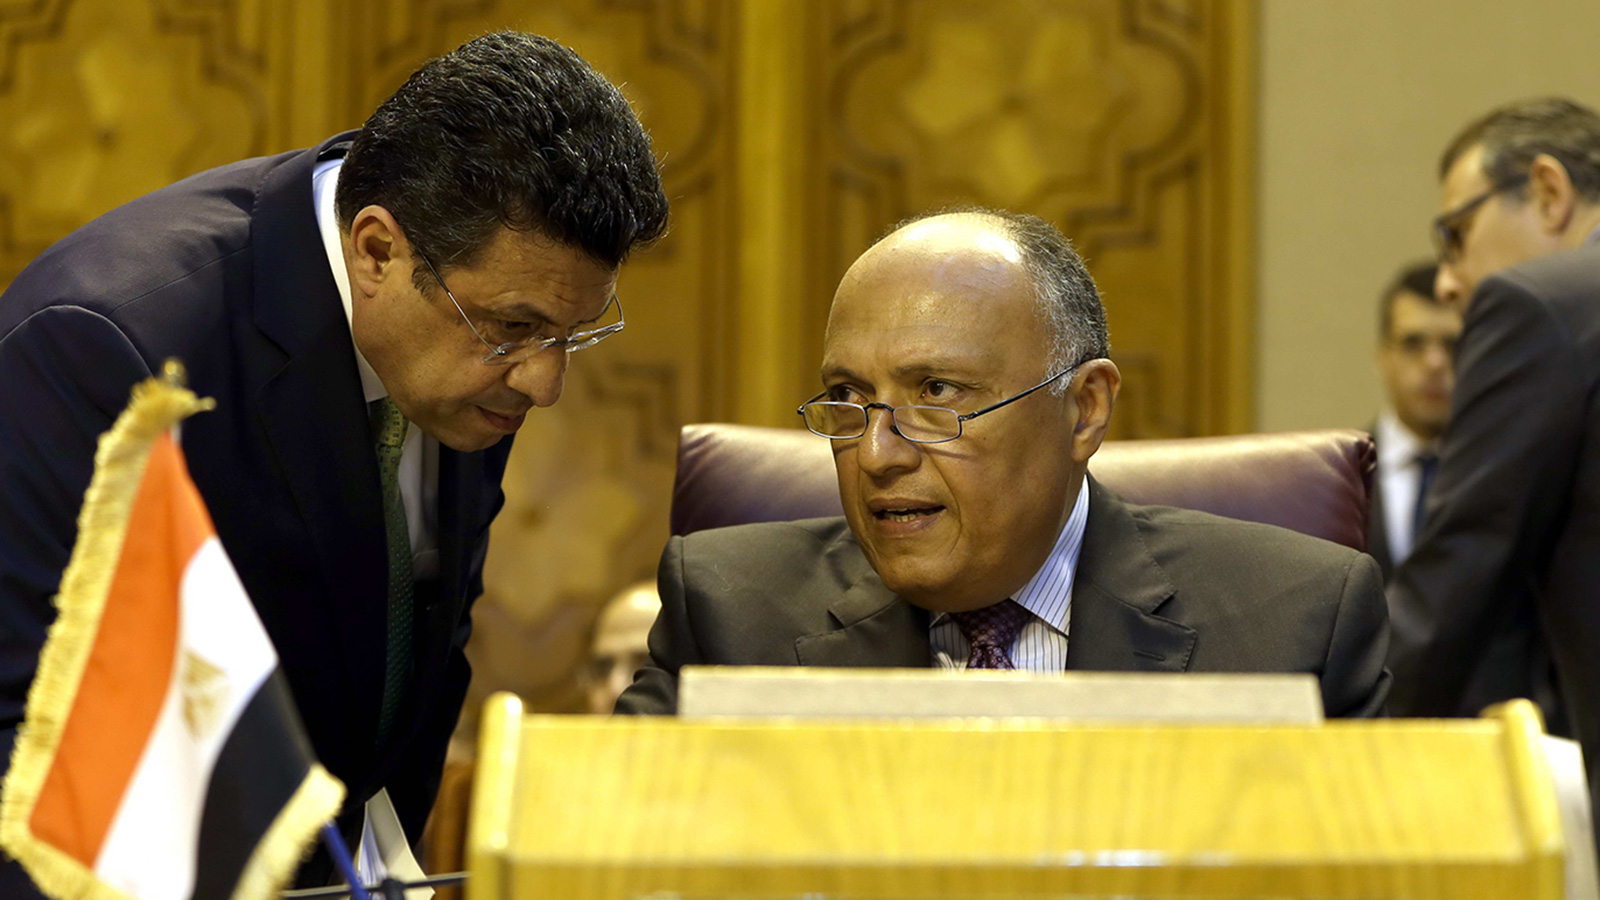 الخارجية المصرية تؤكد في بياناتها دعم استقرار السودان (الجزيرة)